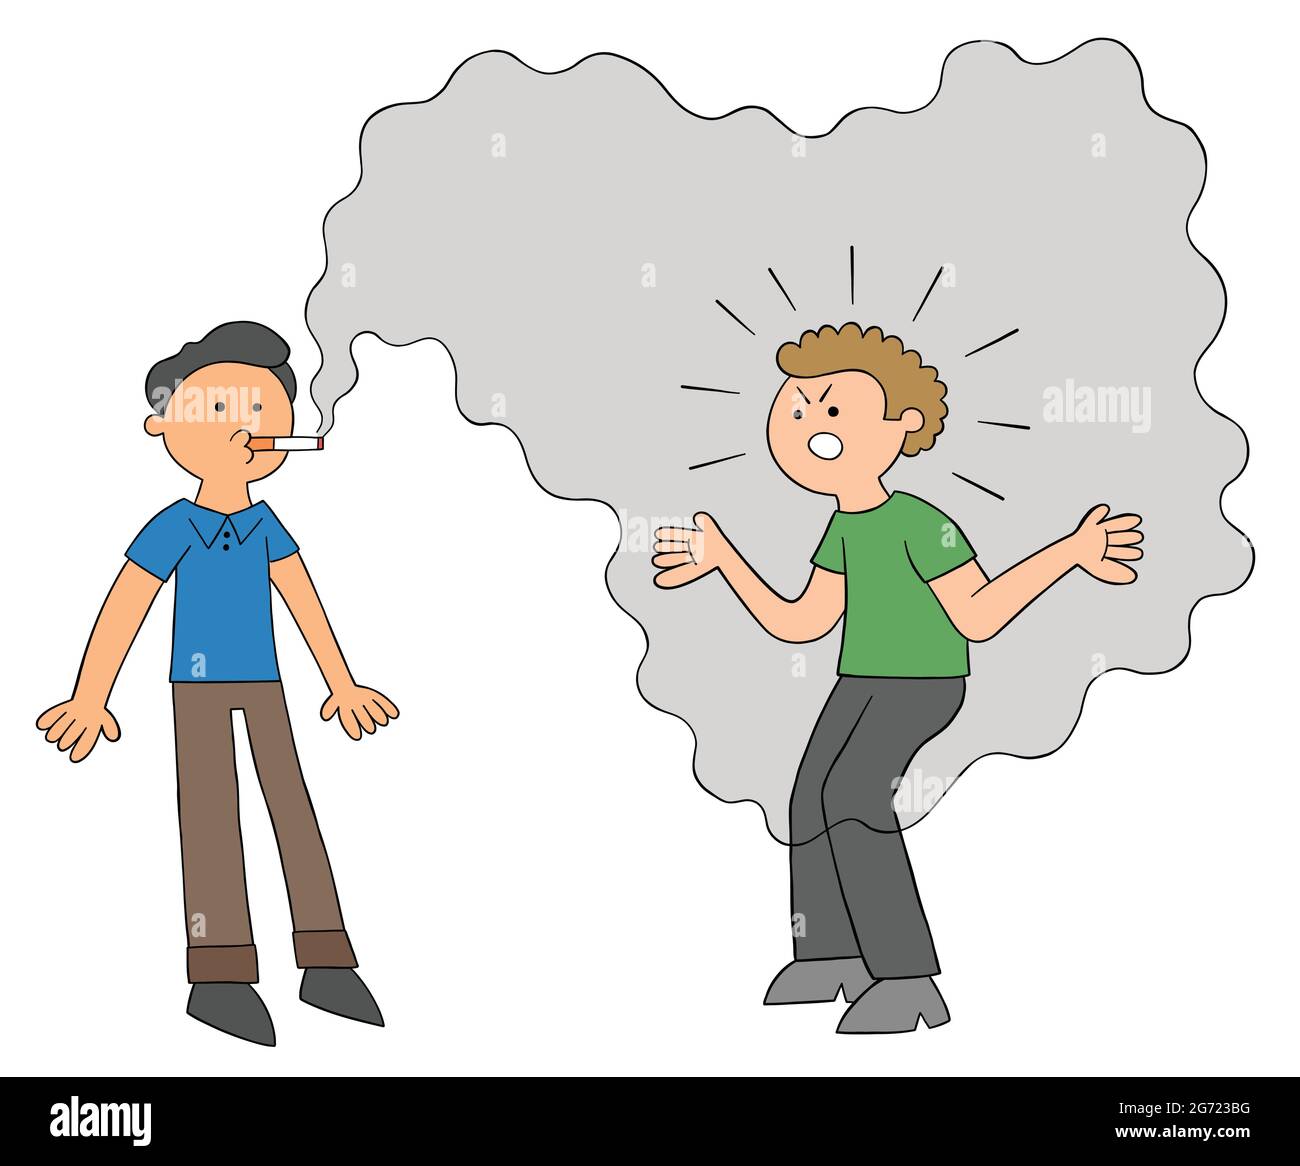 Un homme de dessin animé addicté fume et un autre homme est énervé par la fumée et se met en colère, illustration vectorielle. Contours colorés et noirs. Illustration de Vecteur